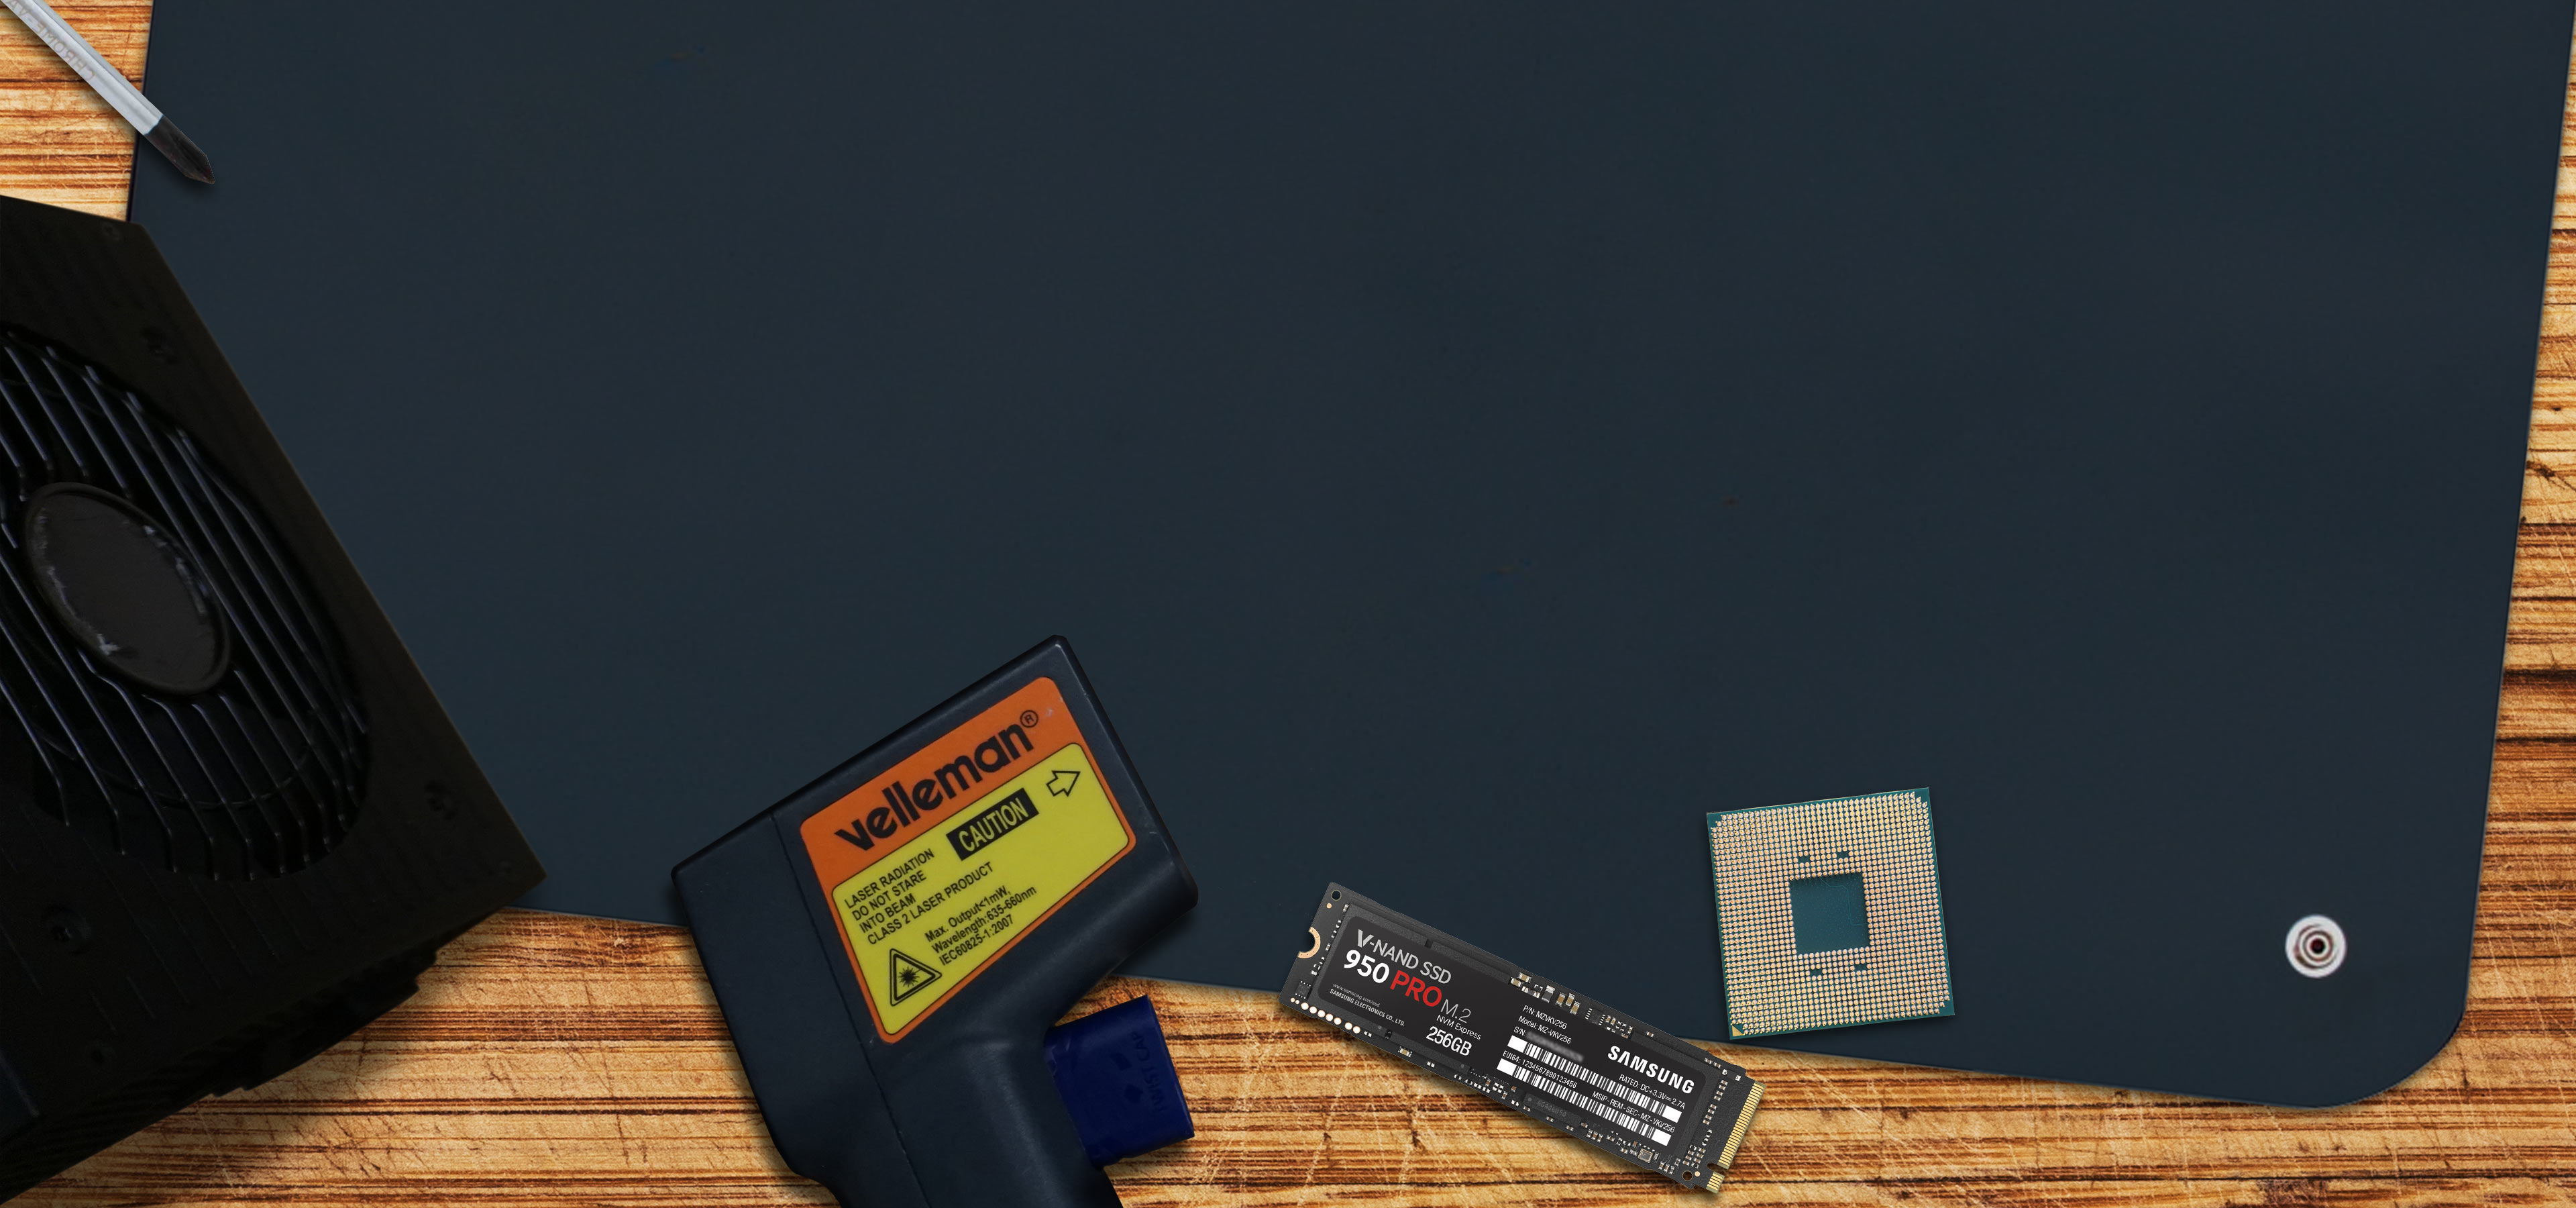 MSI X99-A Sli Plus USB 3.1 Ready DDR4 LGA2011v3 Socket Motherboard